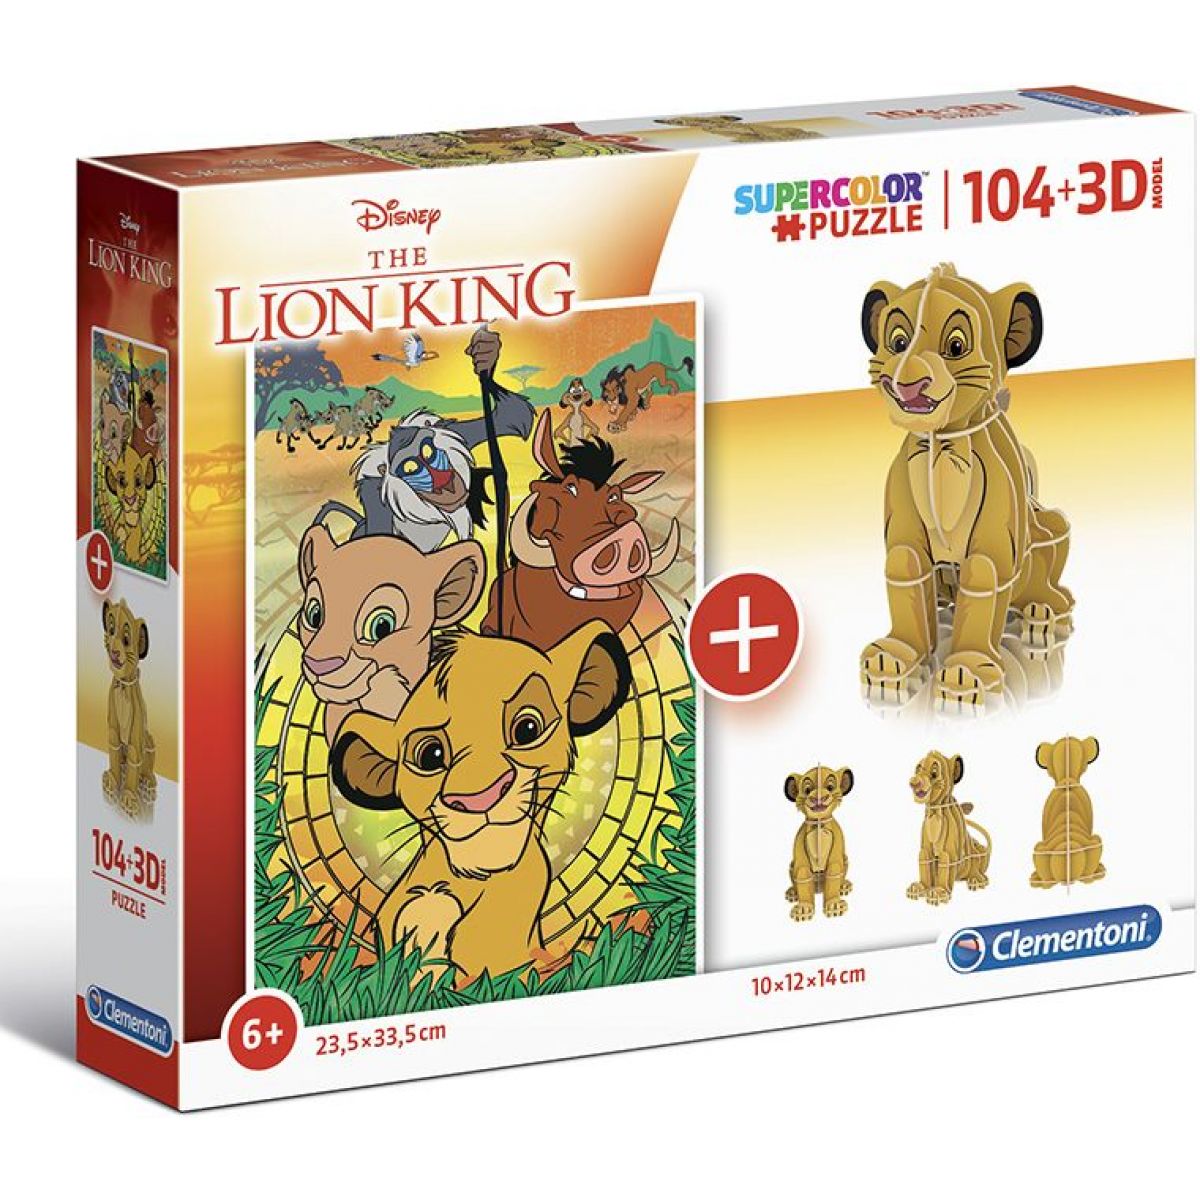 Clementoni Puzzle Supercolors 104 dílků 3D model Lion King